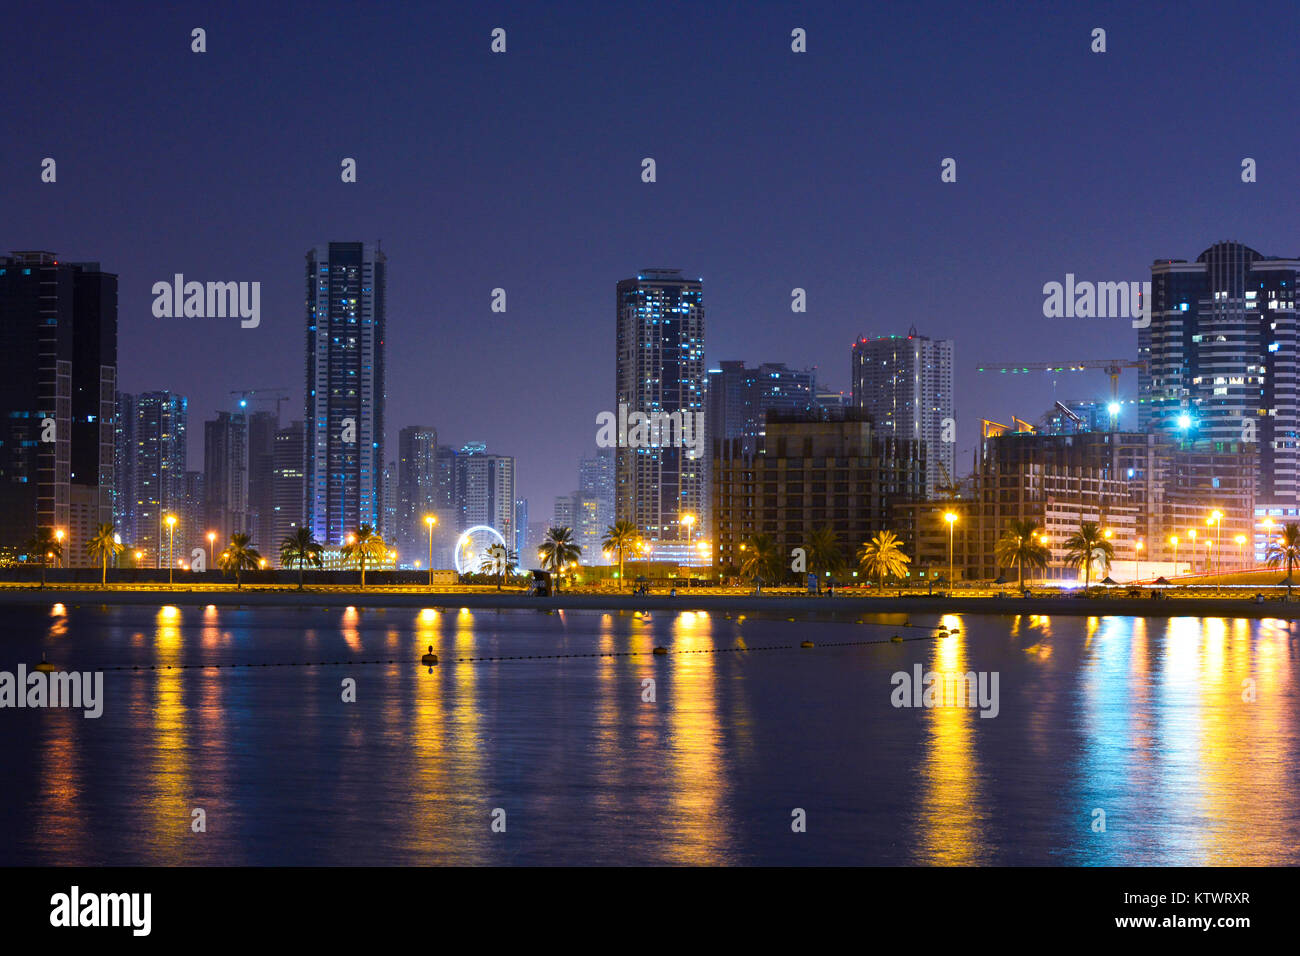 Dubaï, Émirats arabes unis. Une plage Vue de côté avec plusieurs couleurs de la réflexion des bâtiments et fond de ciel bleu. Banque D'Images